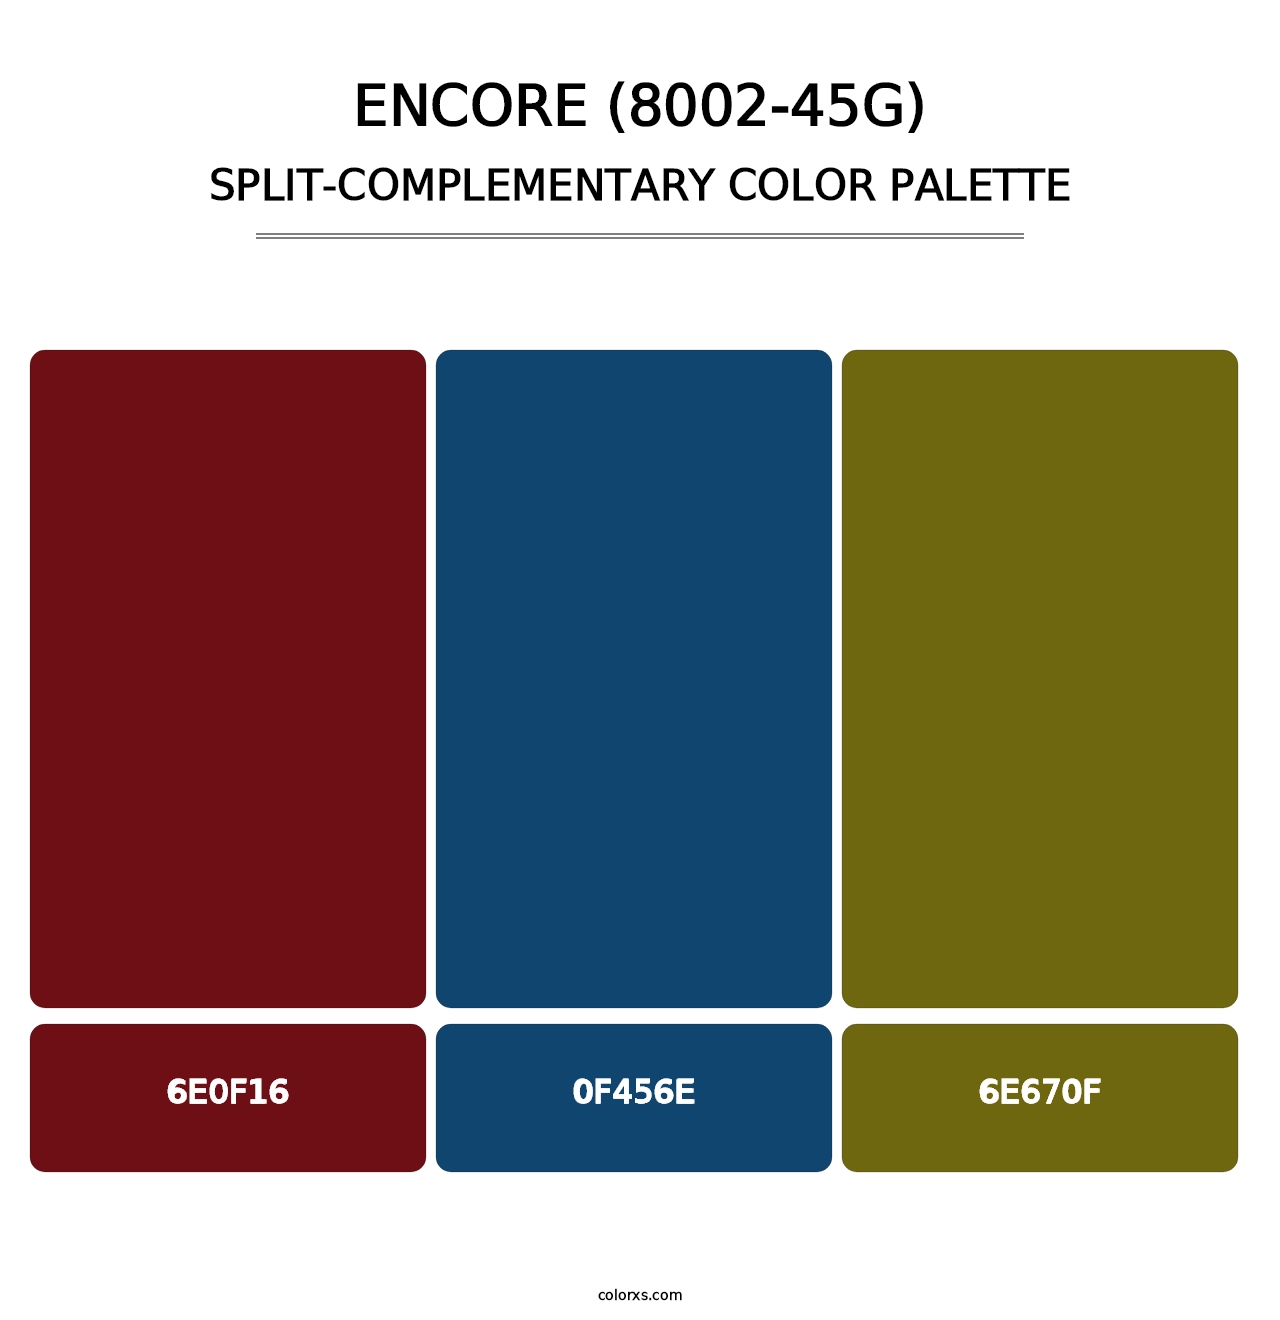 Encore (8002-45G) - Split-Complementary Color Palette